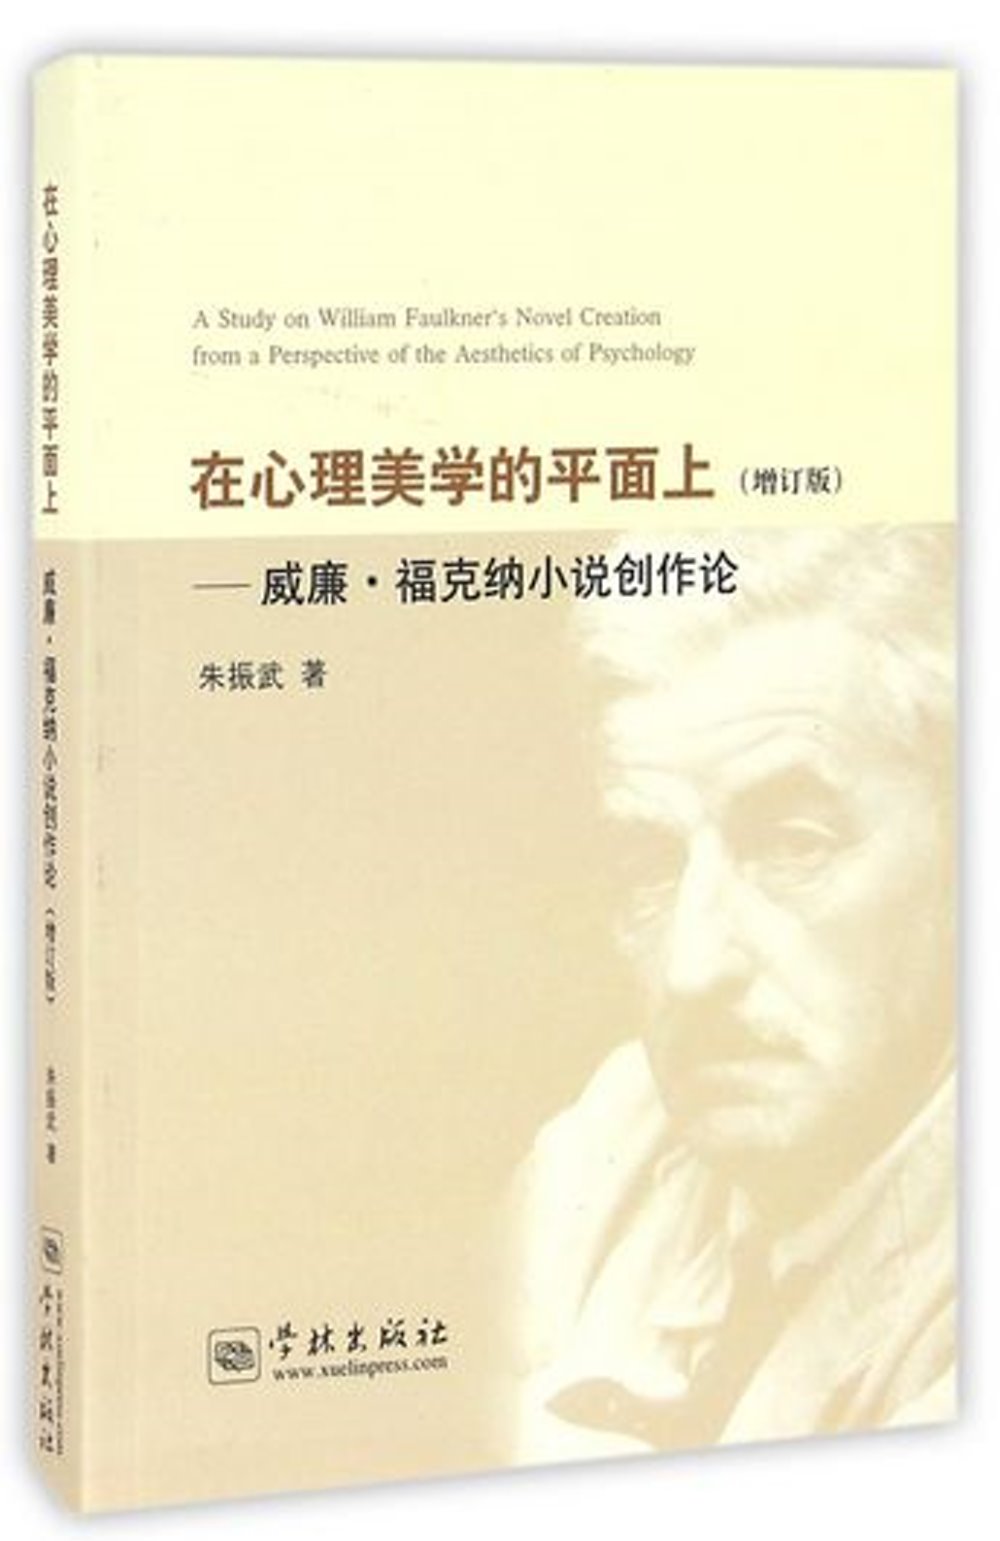 在心理美學的平面上：威廉·福克納小說創作論（增訂版）